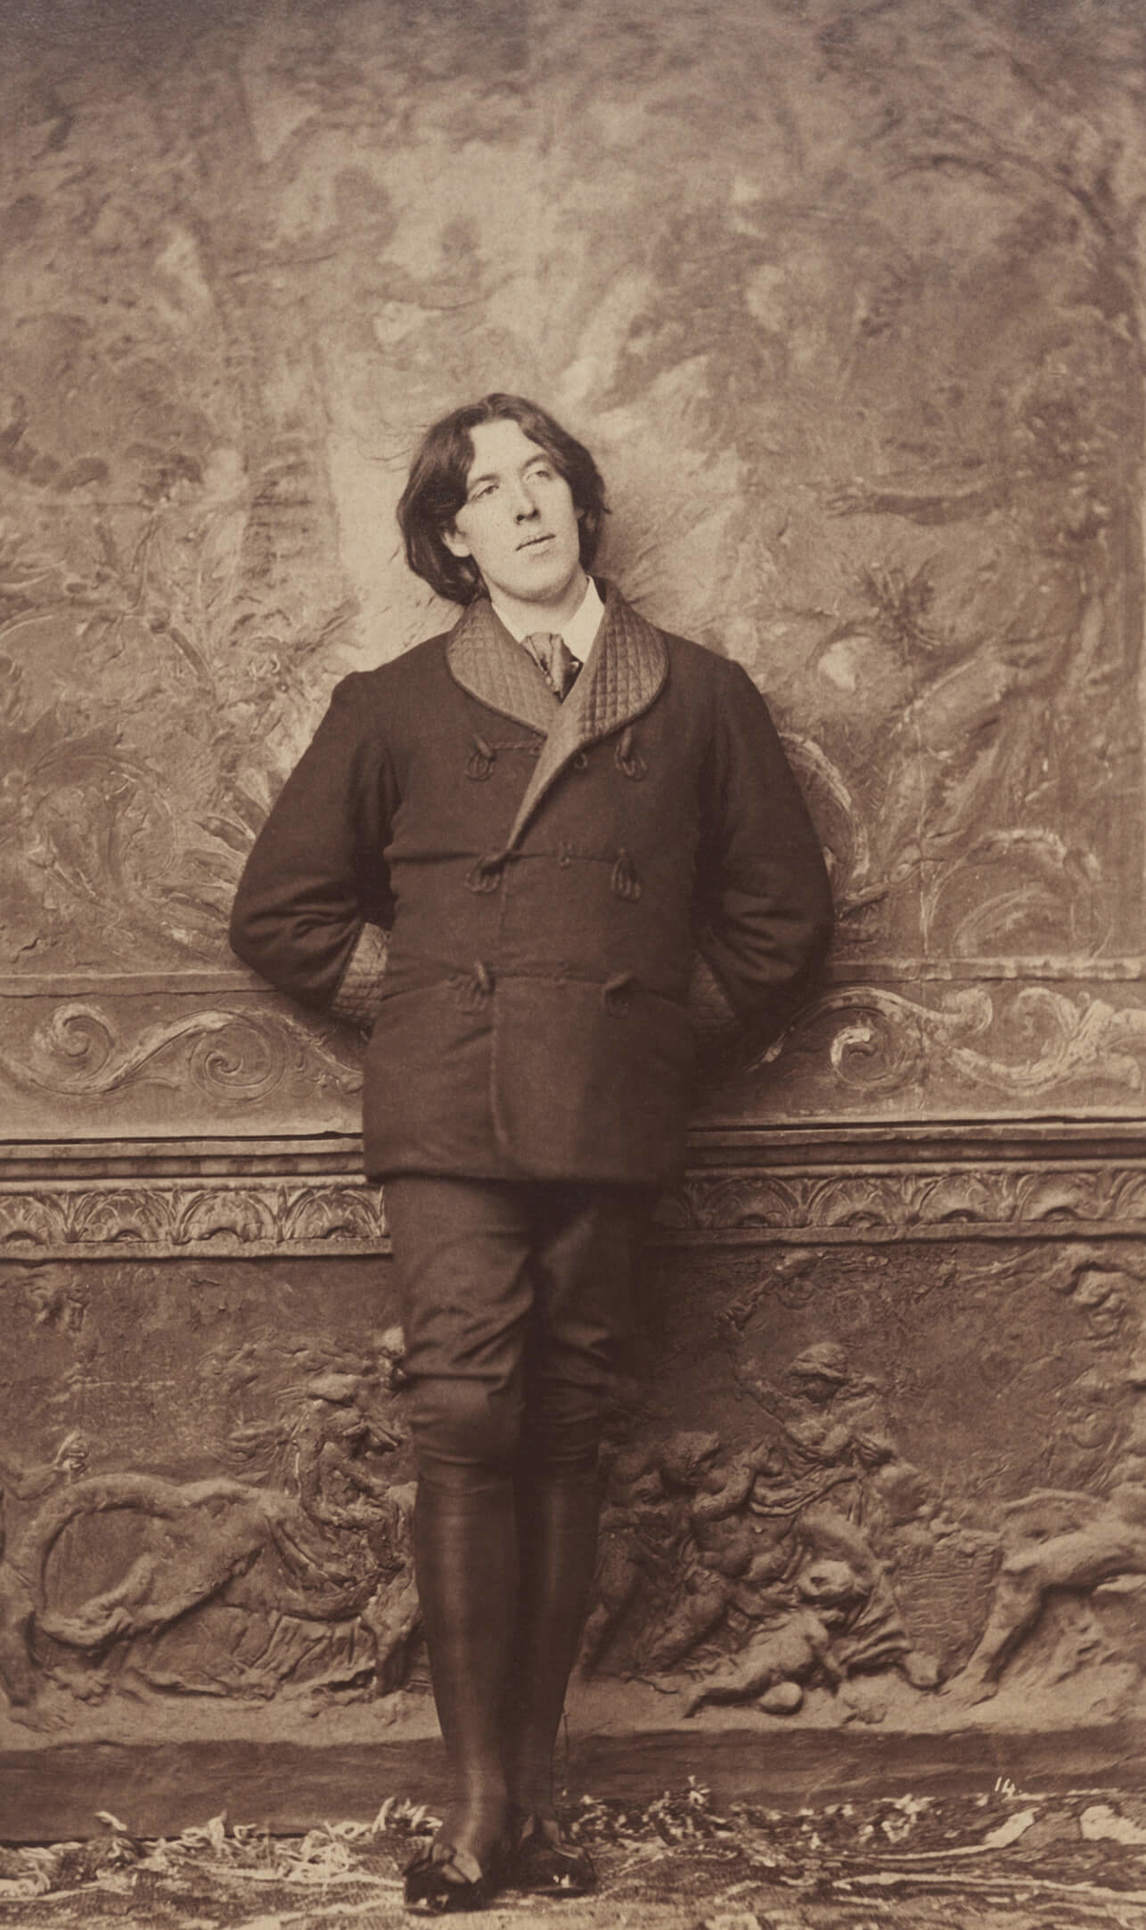 Napoleon Sarony, Oscar Wilde, 1882